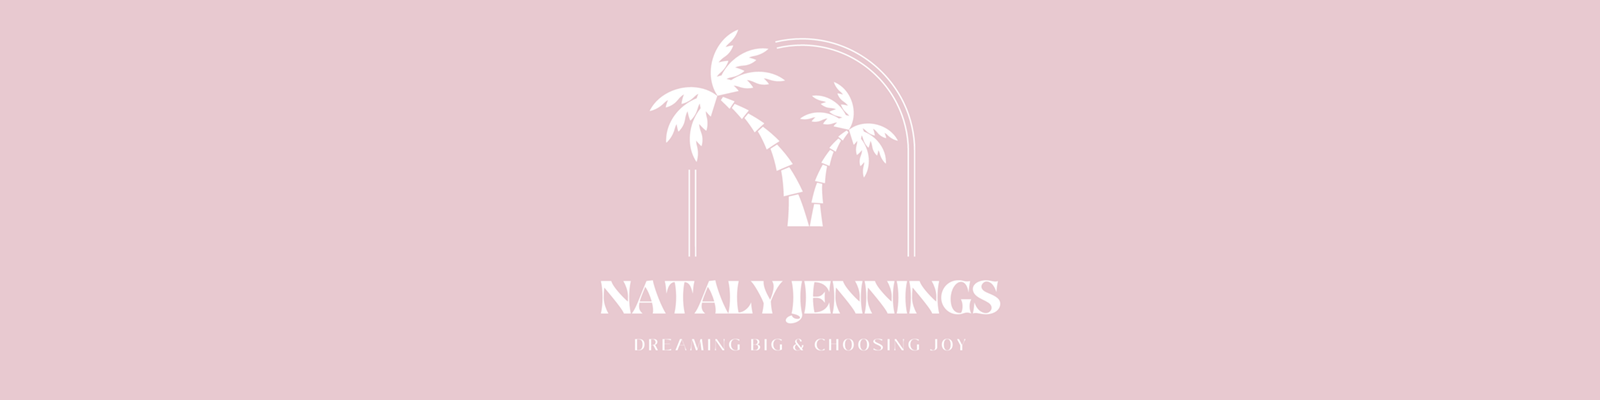 Nataly Jennings